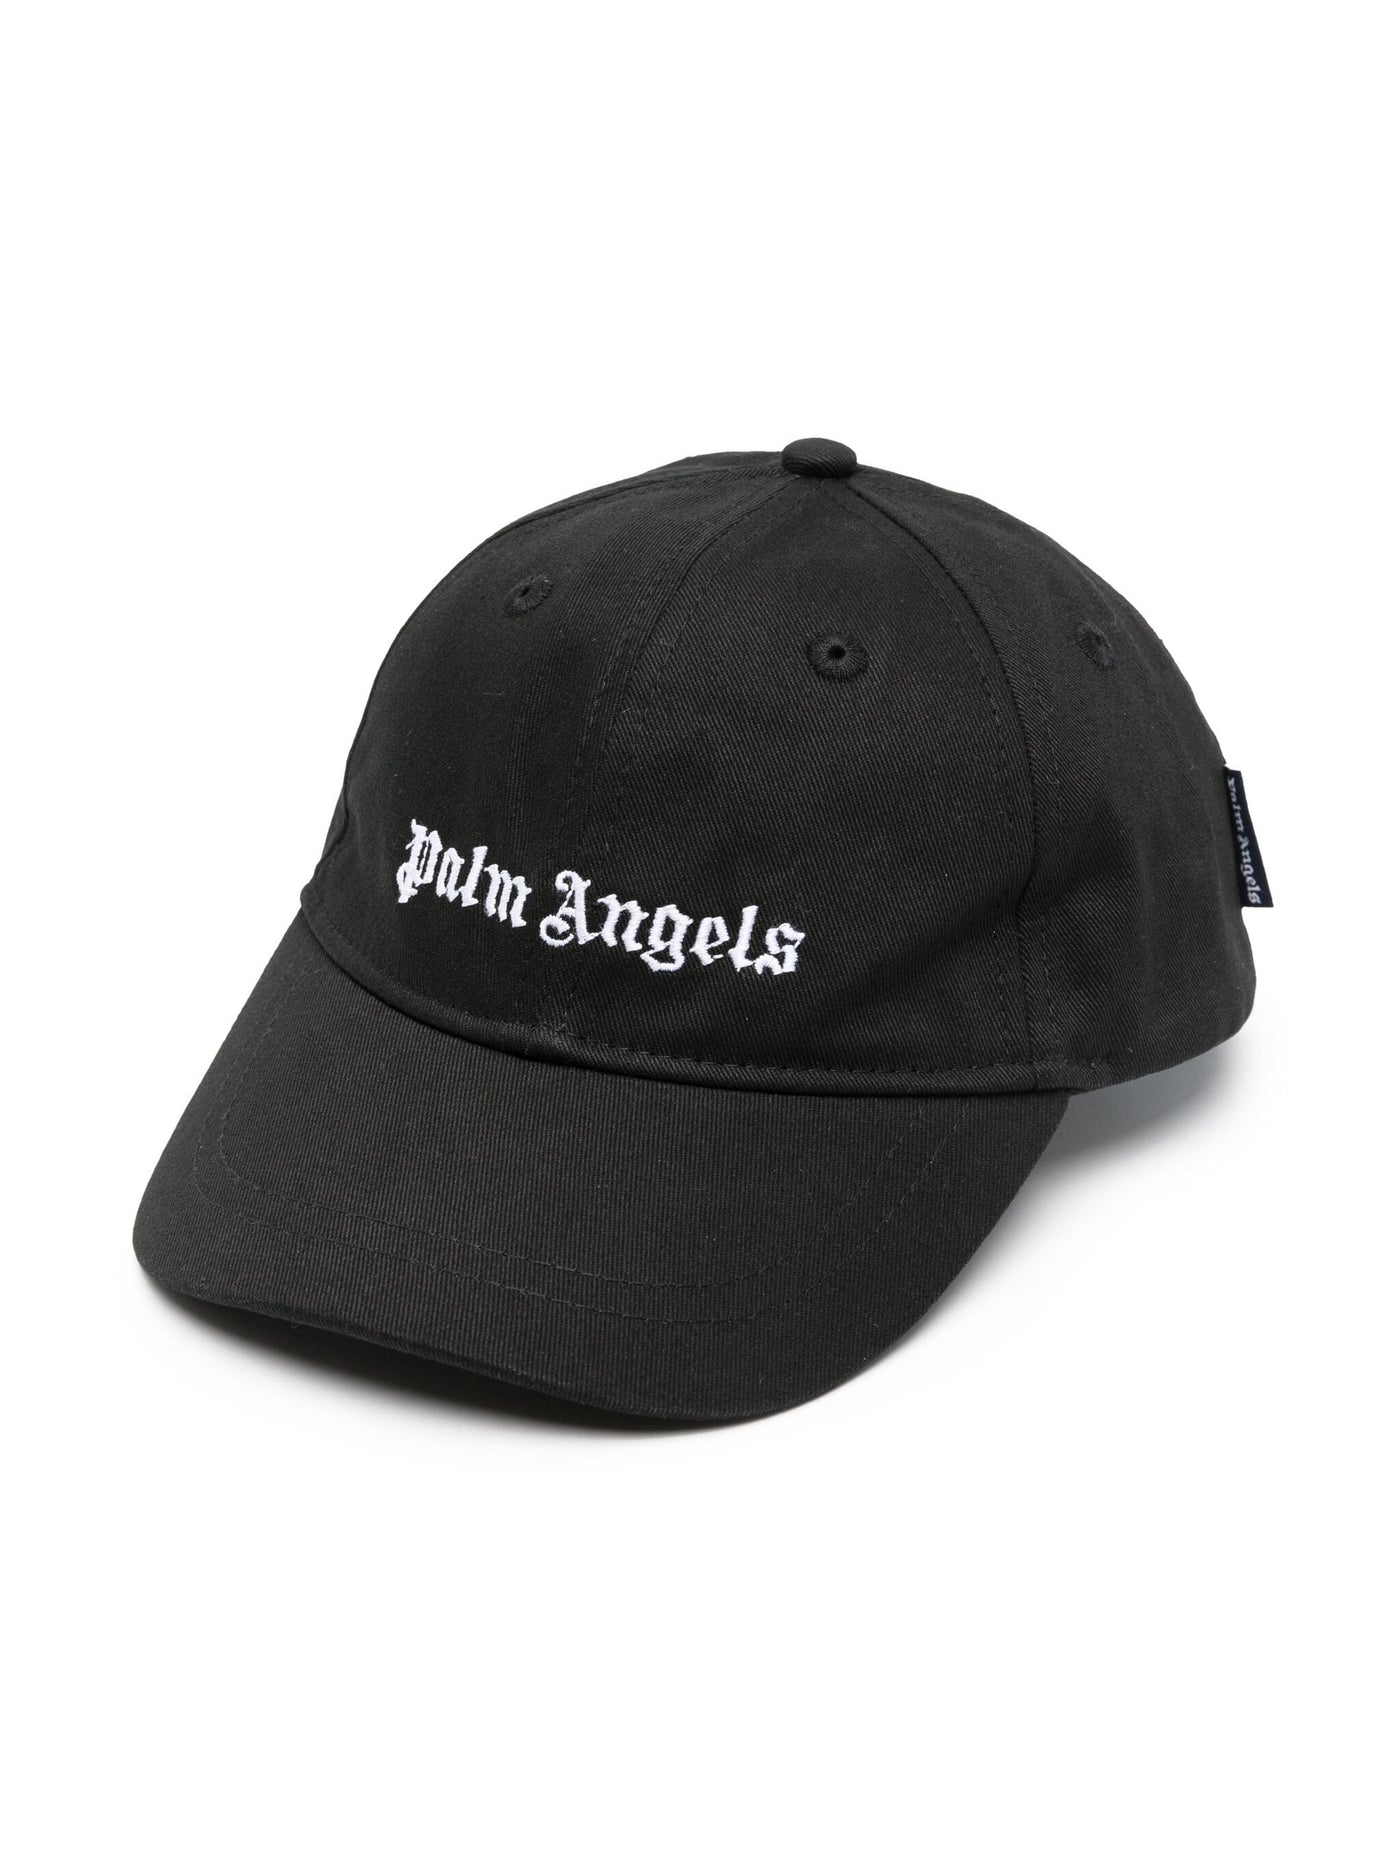 LOGO BASEBALL CAP BLACK WHITE قبعة 